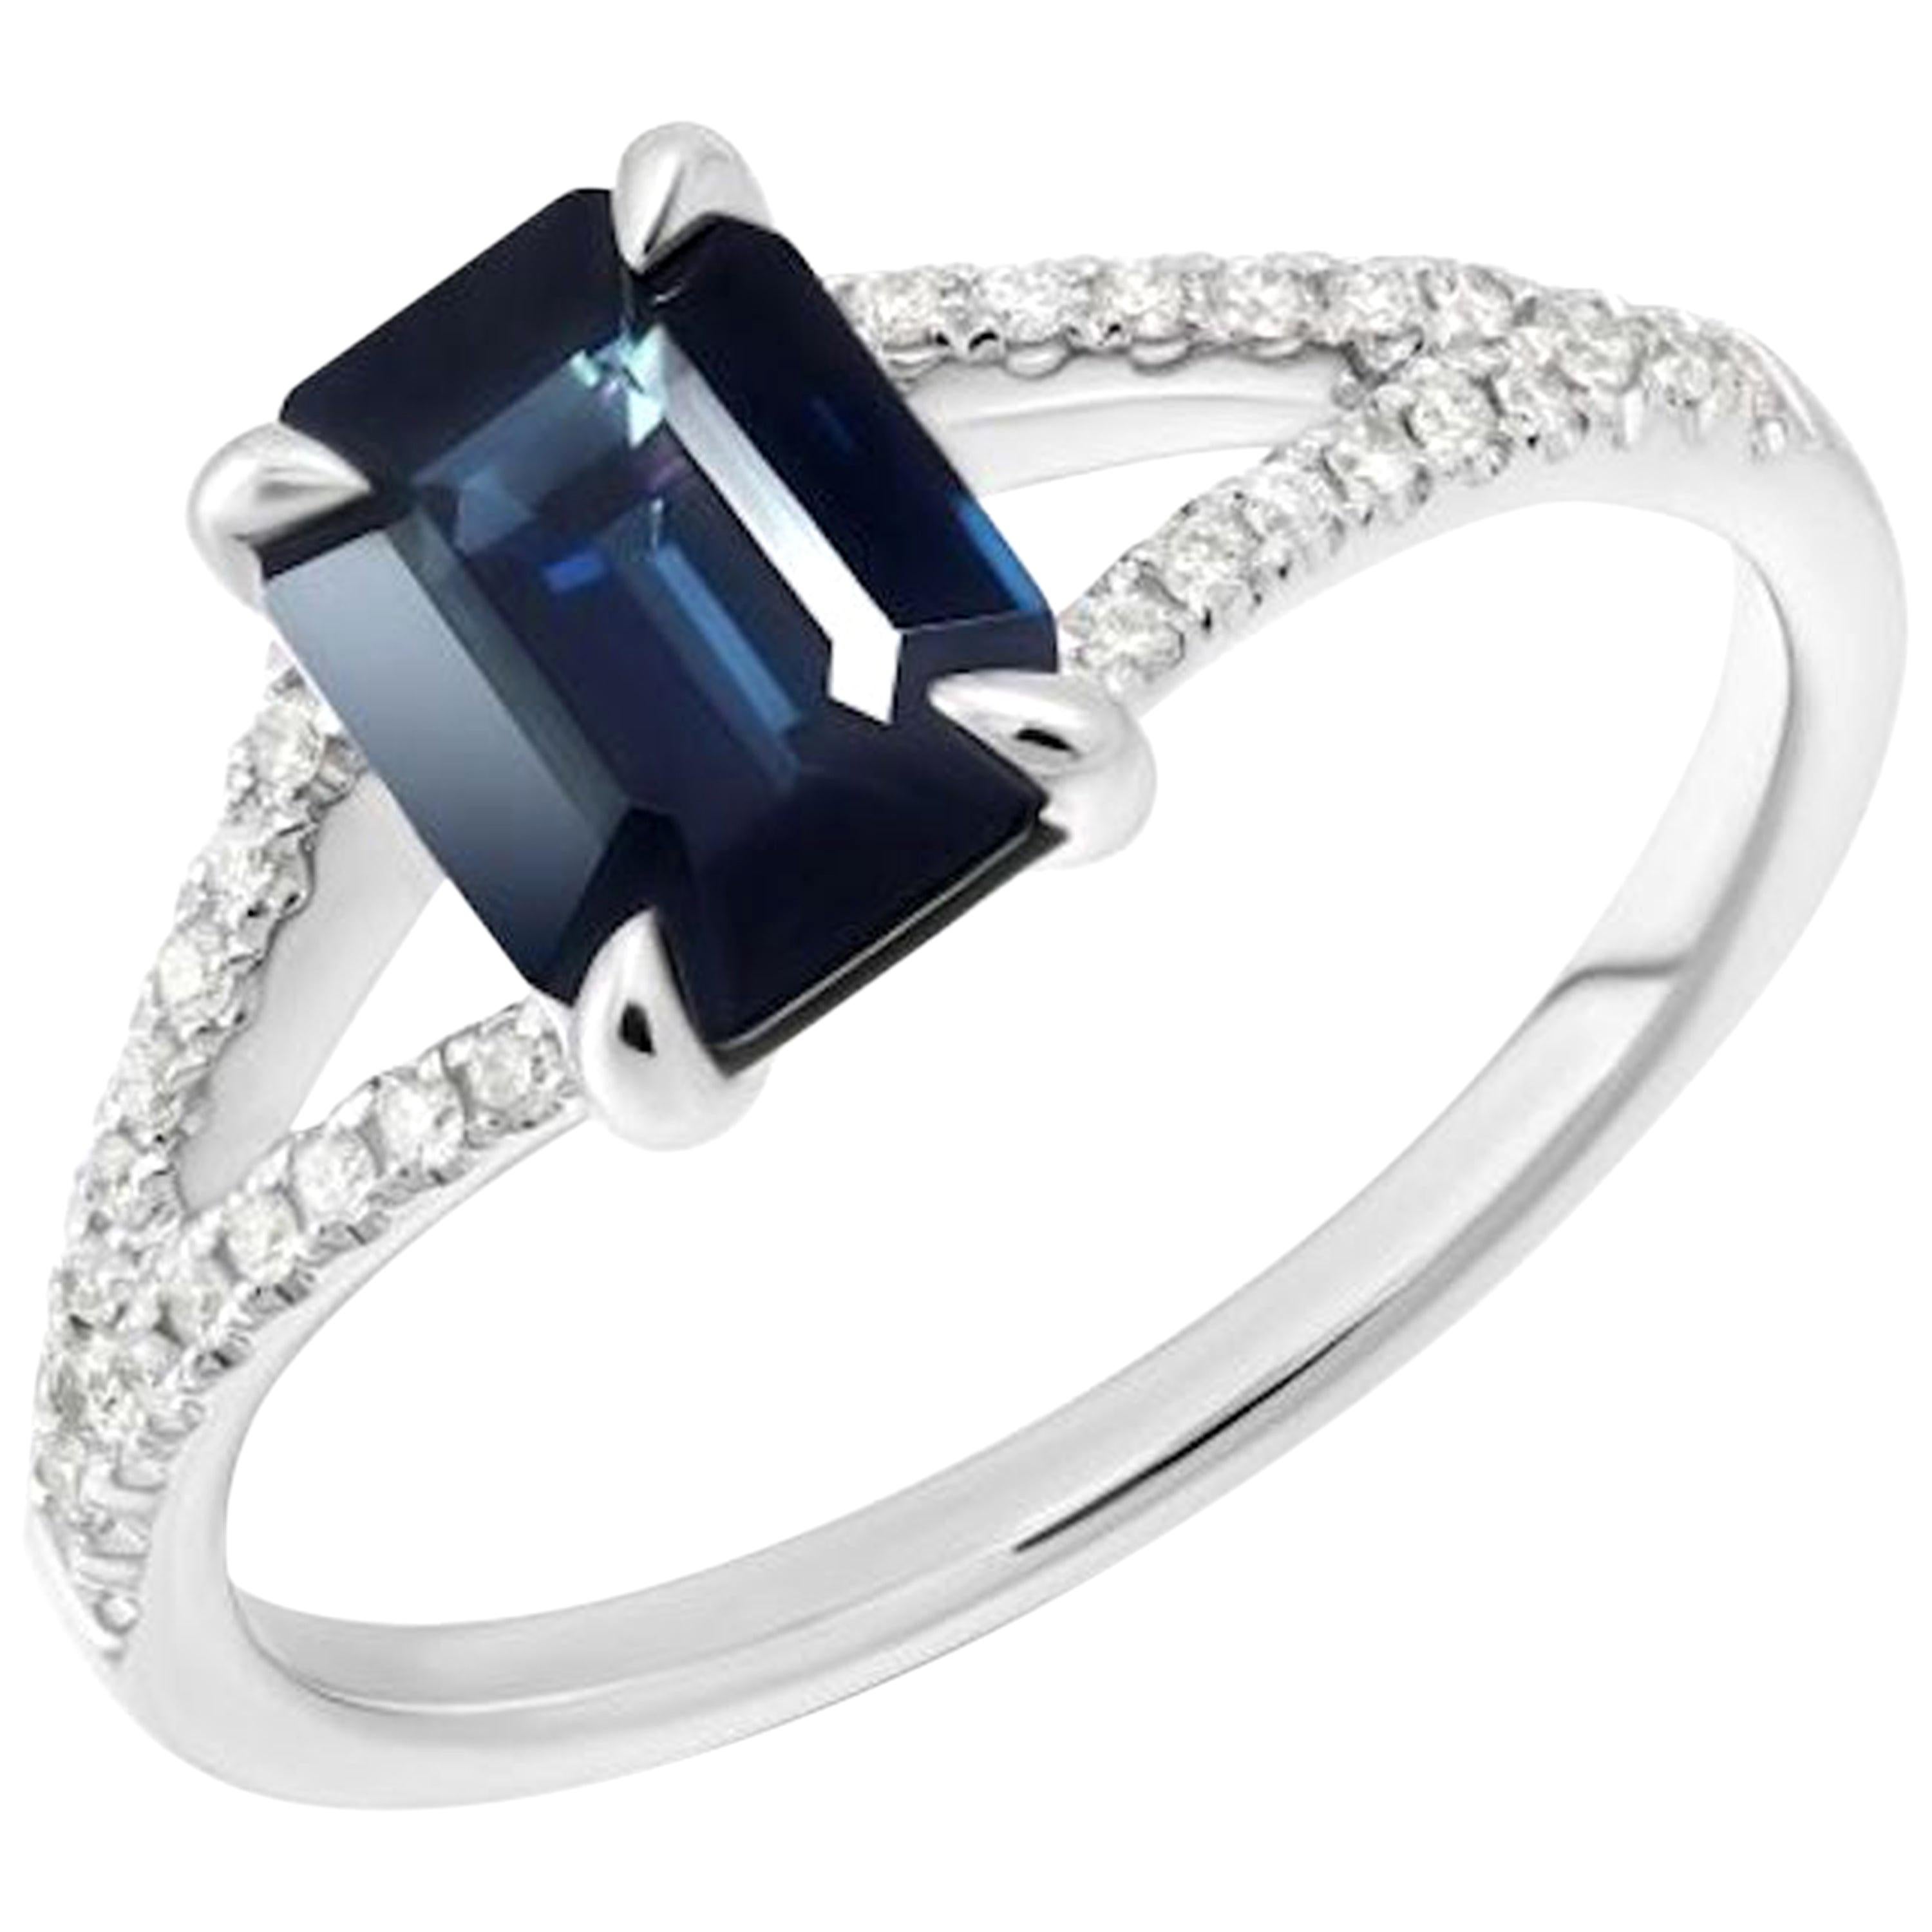 For Sale:  Elegant Blue Sapphire White Diamond White Gold Ring for Her